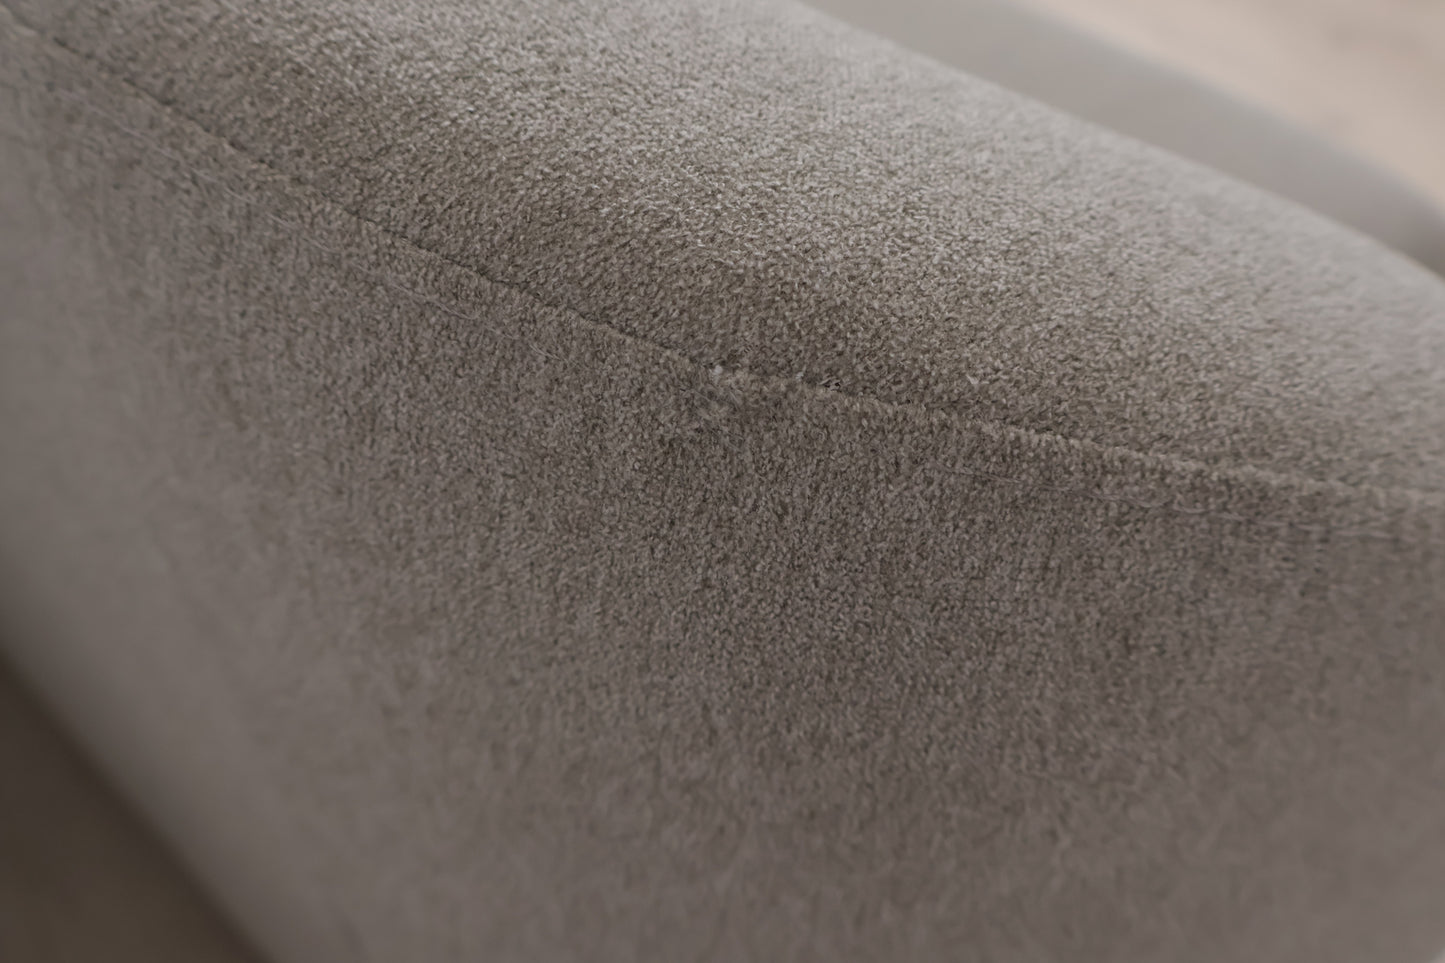 Nyrenset | Lys grå Jysk Egedal 2,5-seter sofa med eikebein